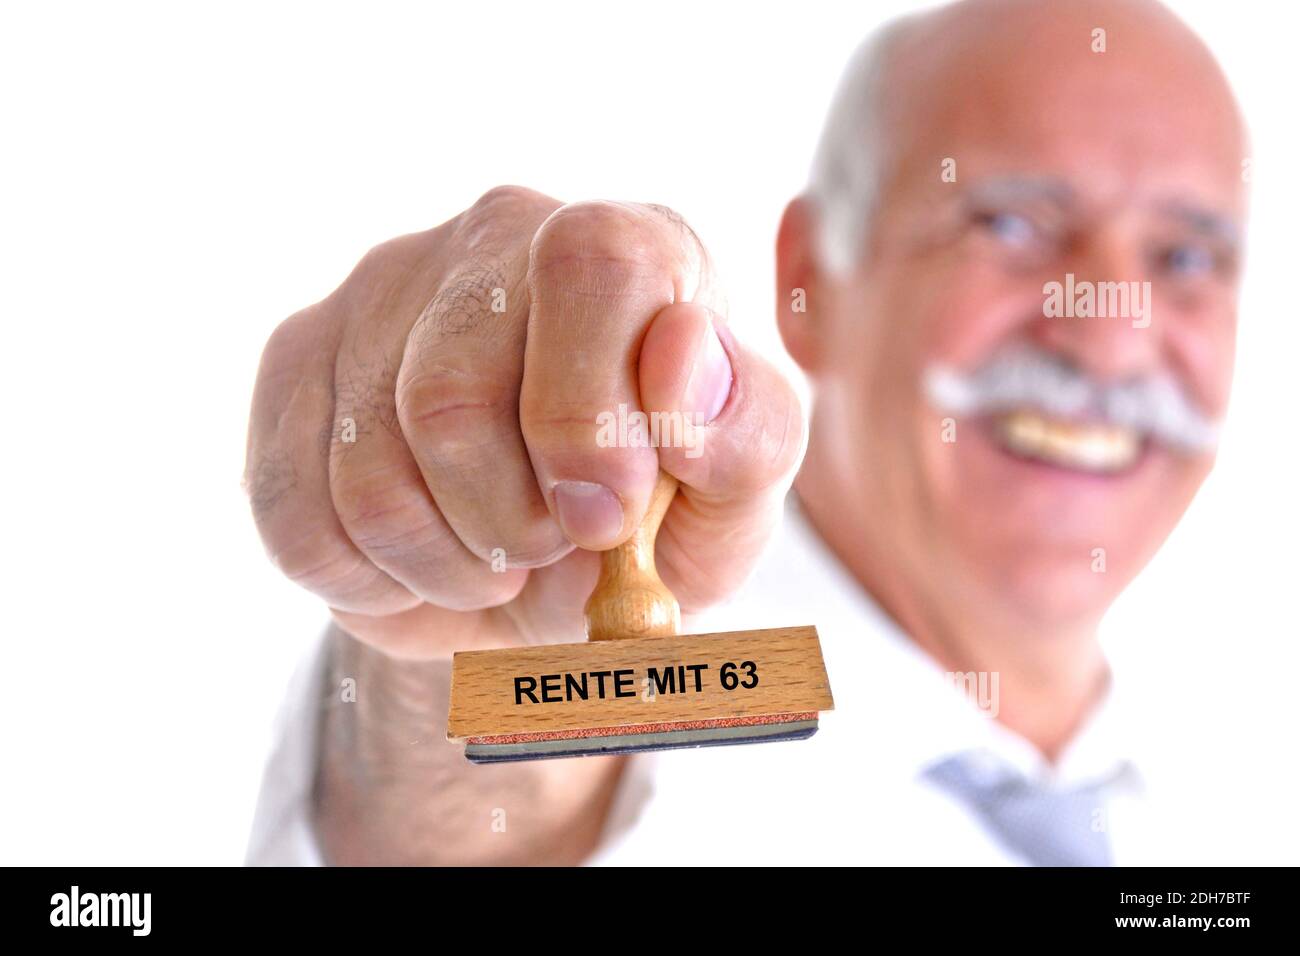 65, 70, Jahre, Mann hält Stempel in der Hand, Aufschrift: Rente mit 63, Stock Photo